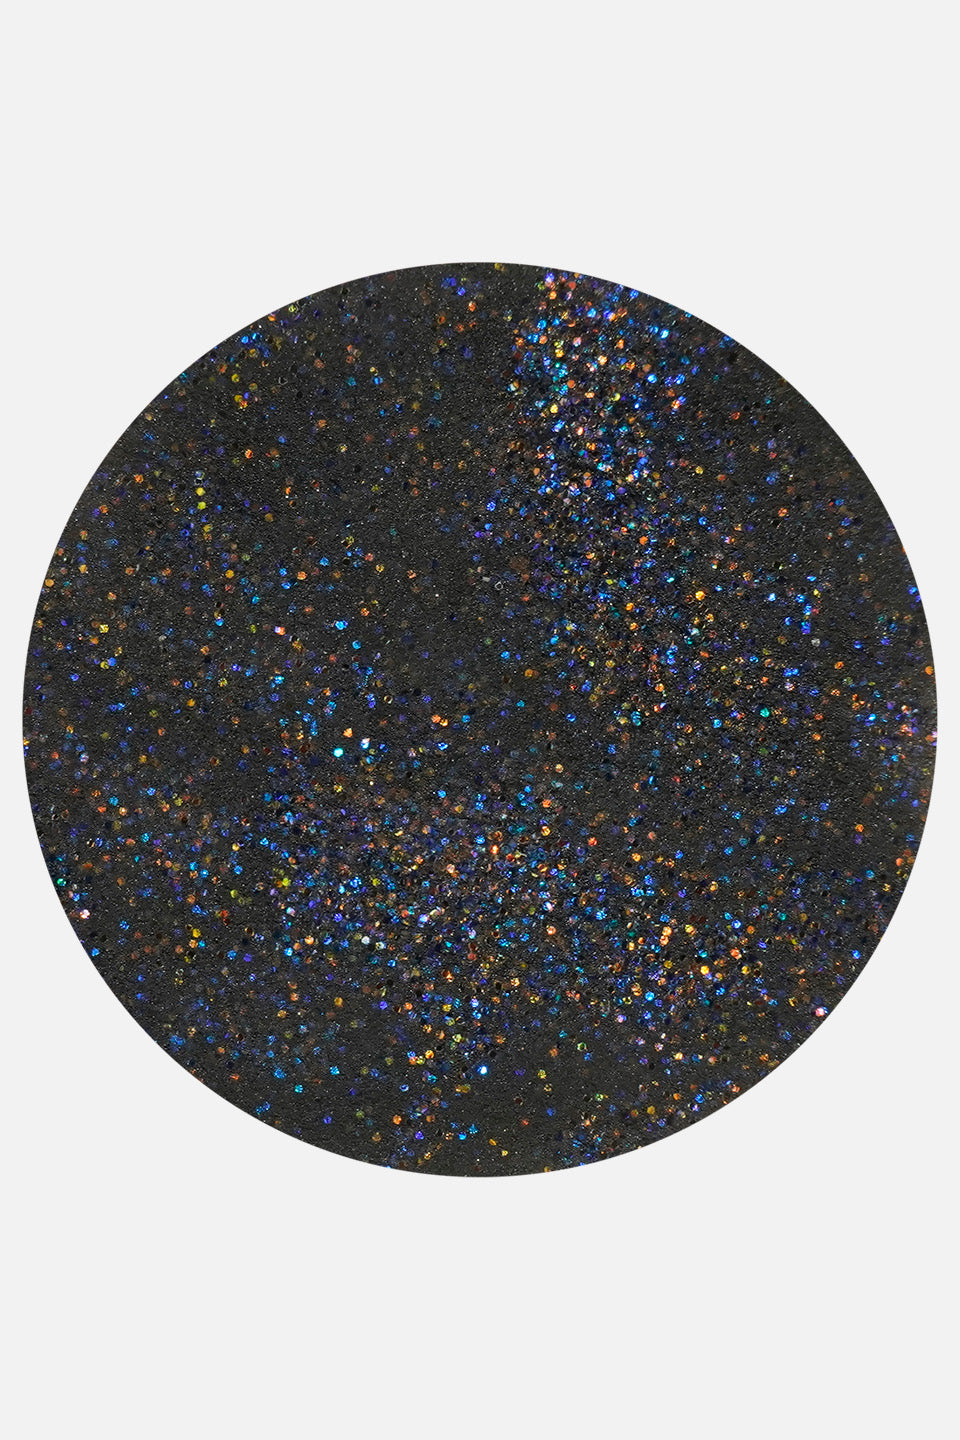 Polvere acrilica nero glitter 3 g